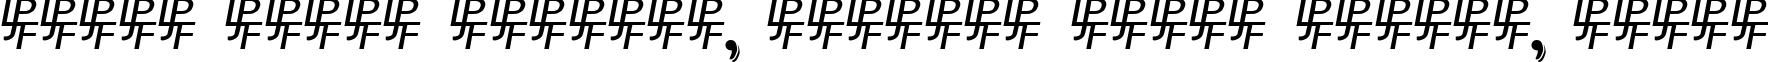 Пример написания шрифтом NewStyleSmallCaps Embossed текста на белорусском